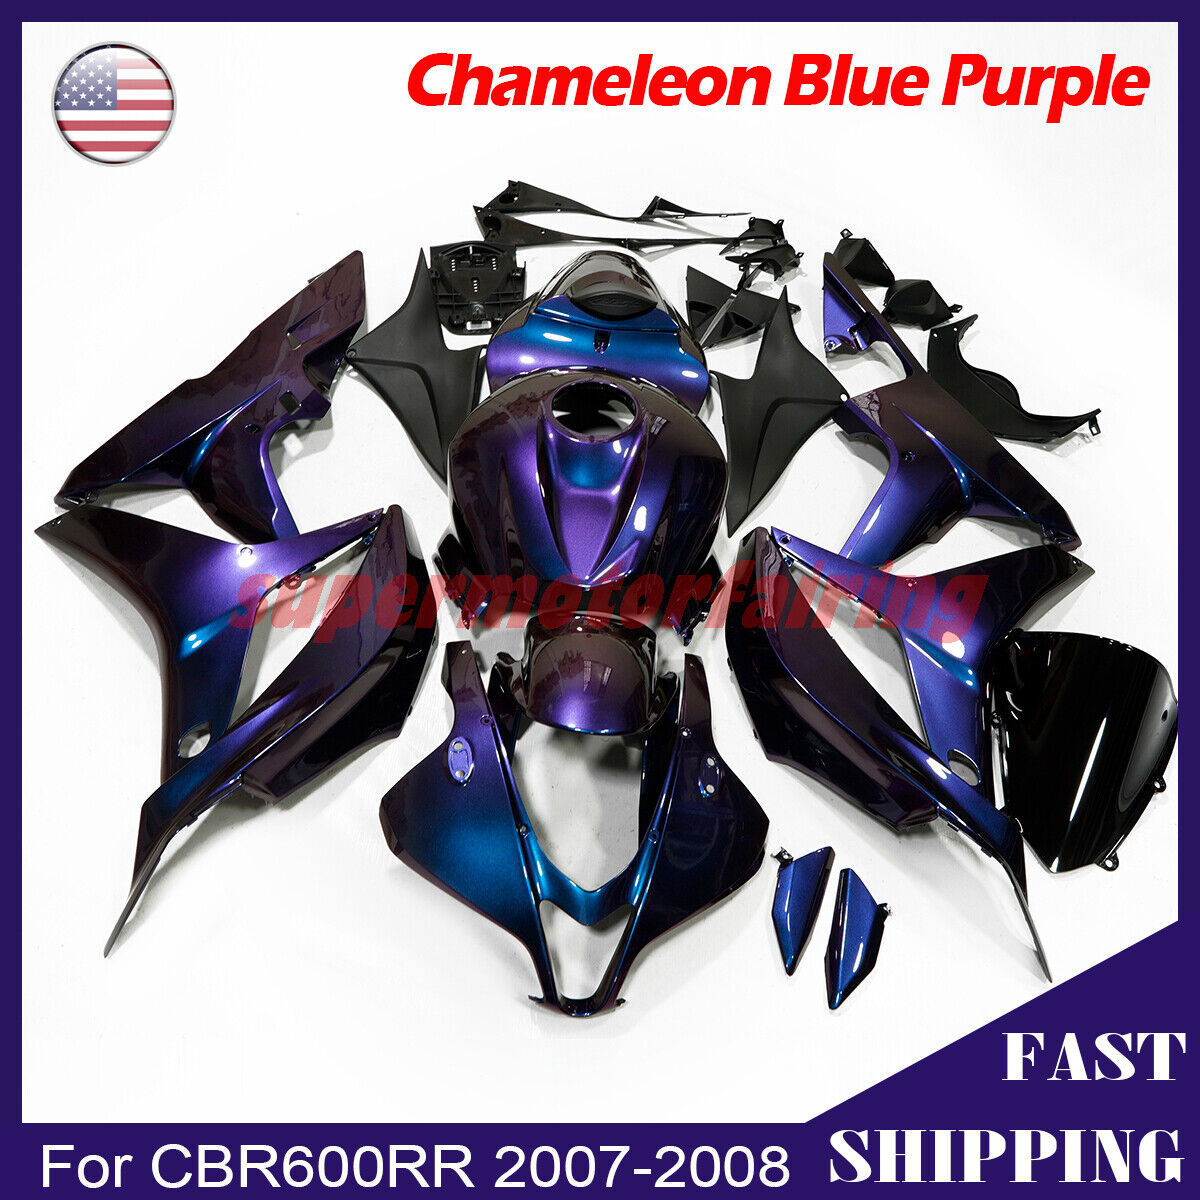 Chameleon Fairing Kit for Honda CBR600RR 2007-2008 Blue Purple Painted ABS Body